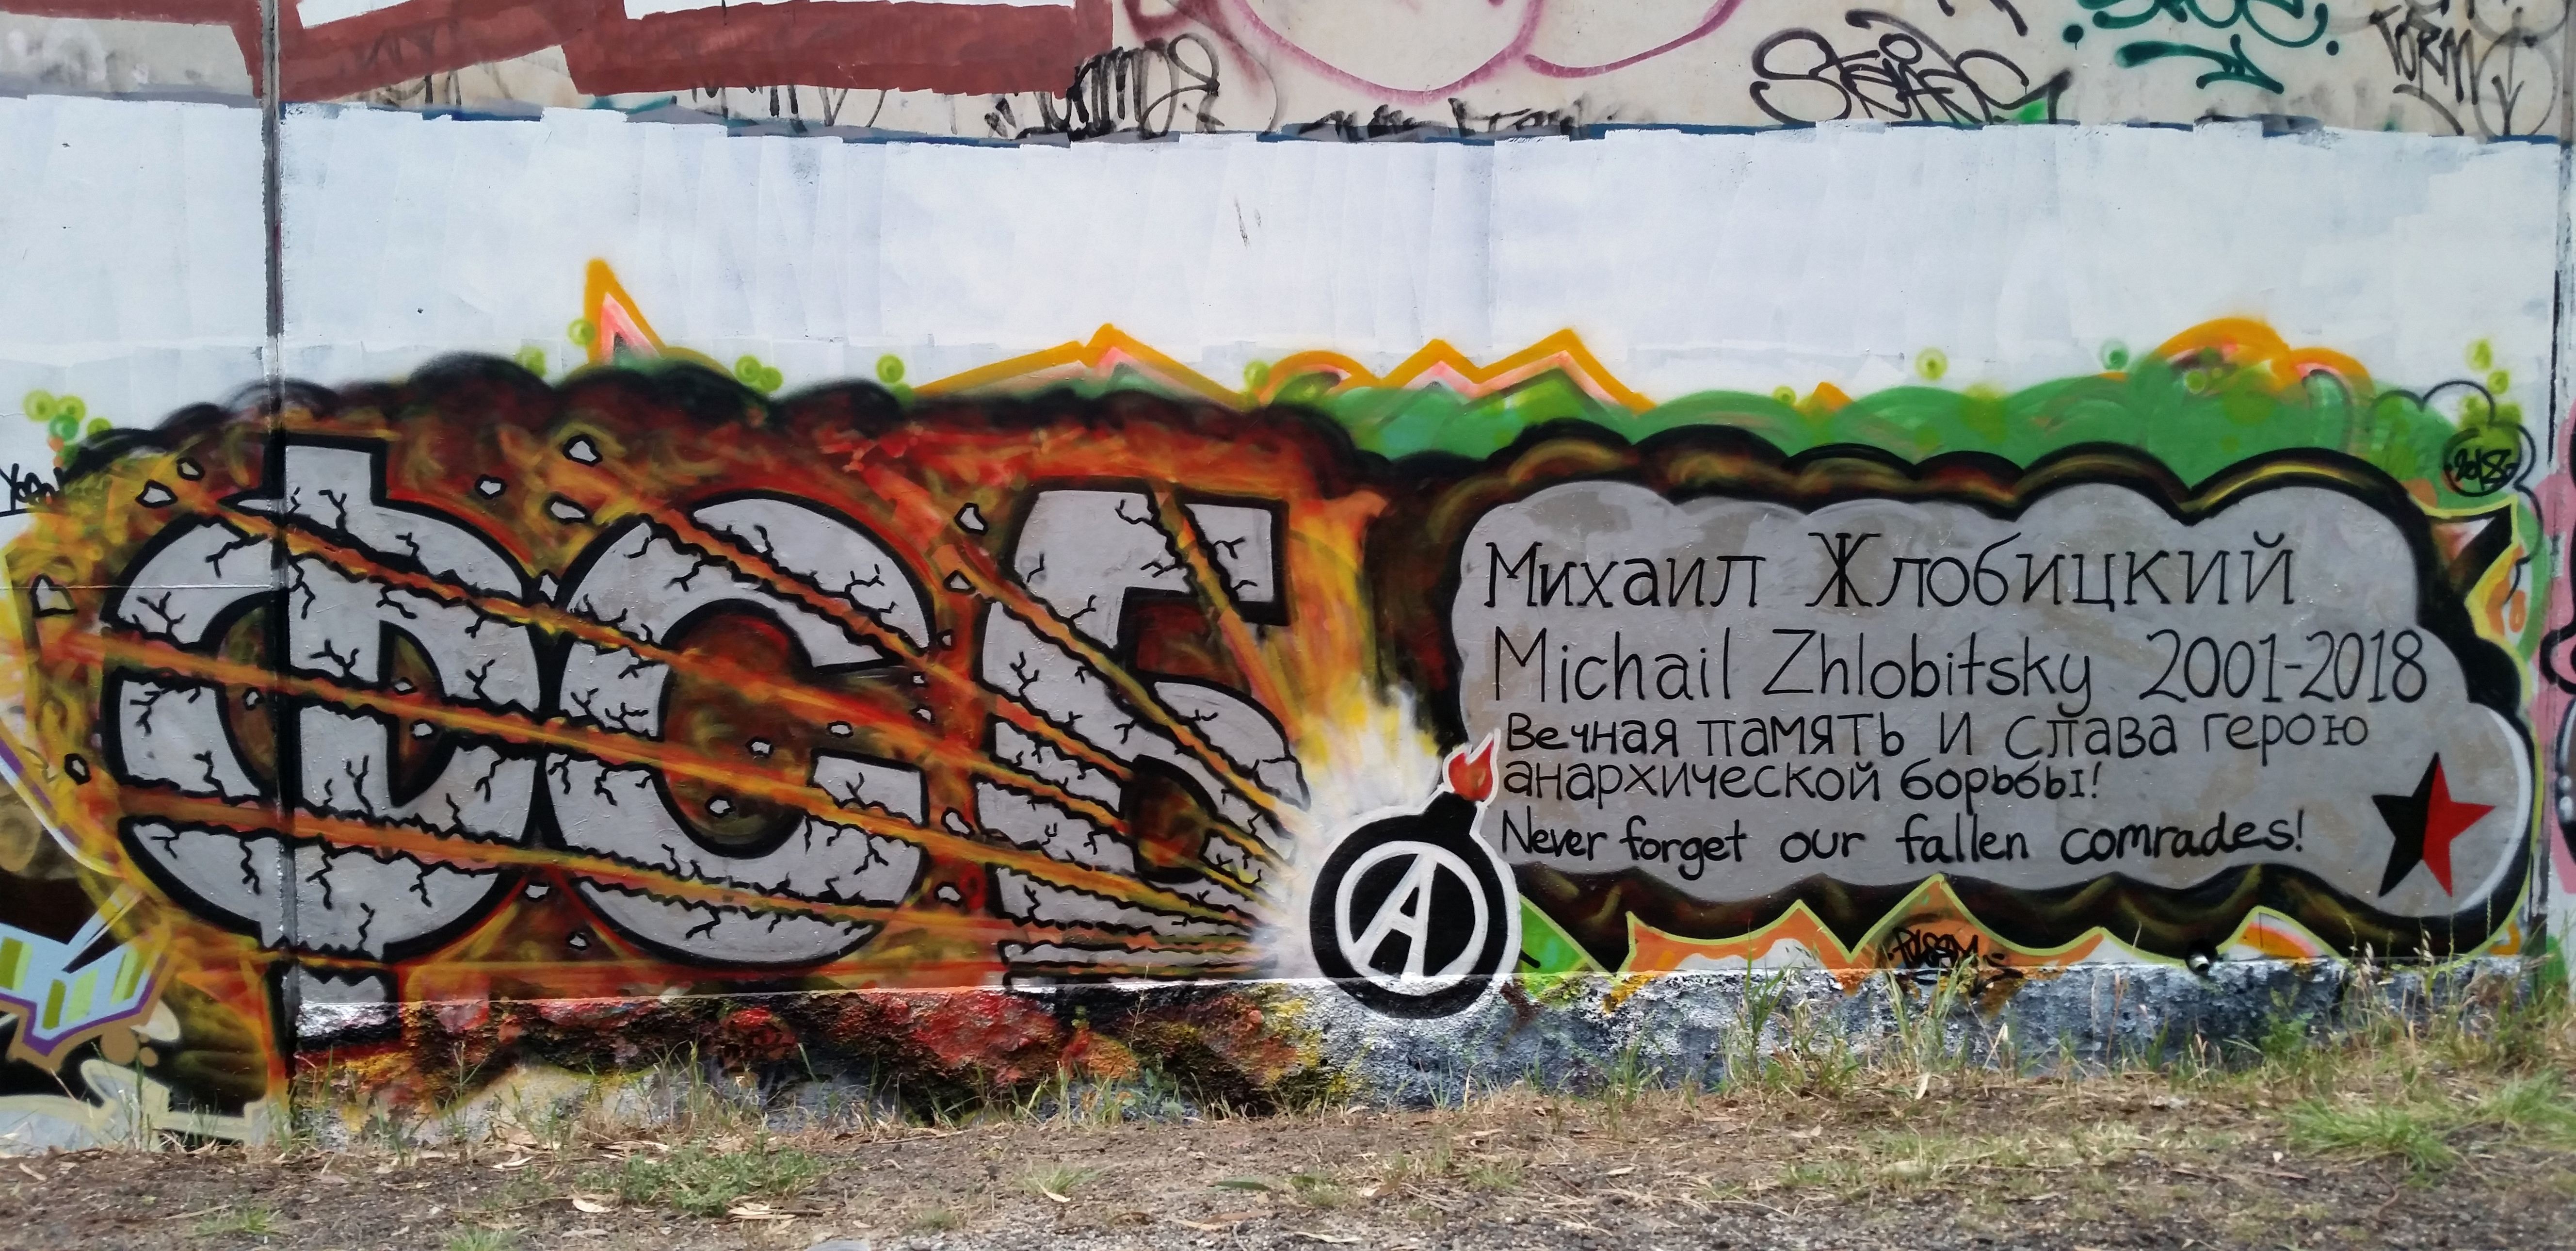 Граффити солидарности с Михаилом Жлобицким в Мельбурне